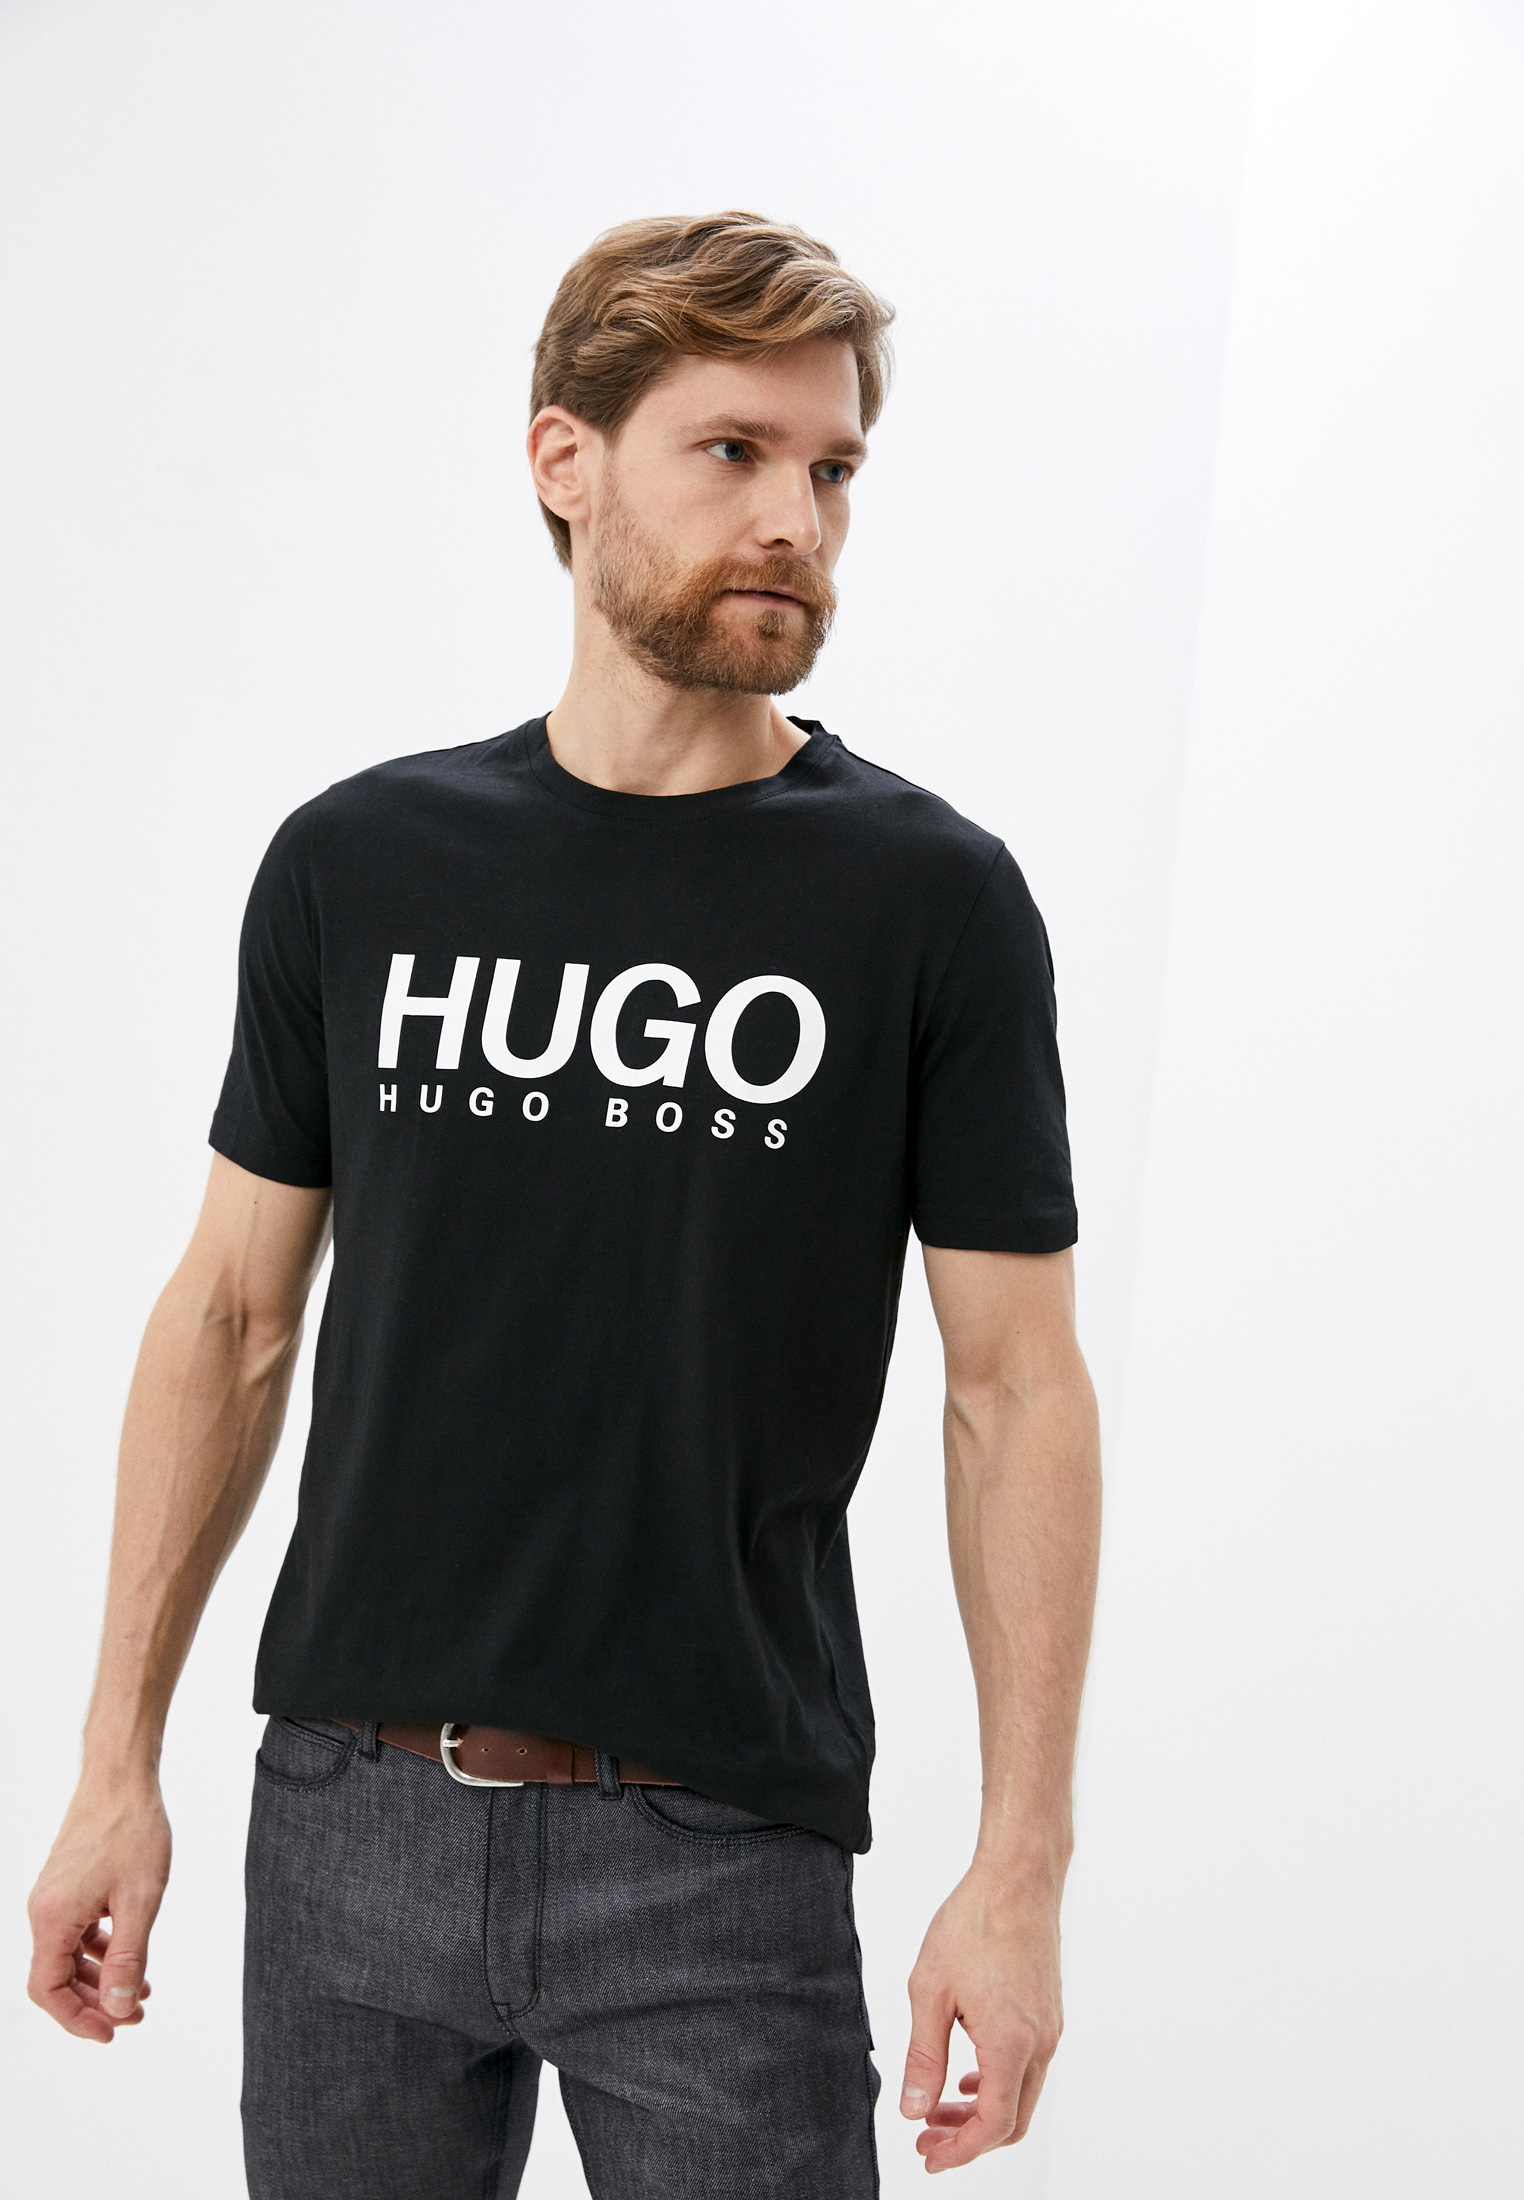 Купить футболку hugo. Футболка Hugo. Hugo футболка мужская. Майка мужская Hugo. Майка Hugo мужская черная.